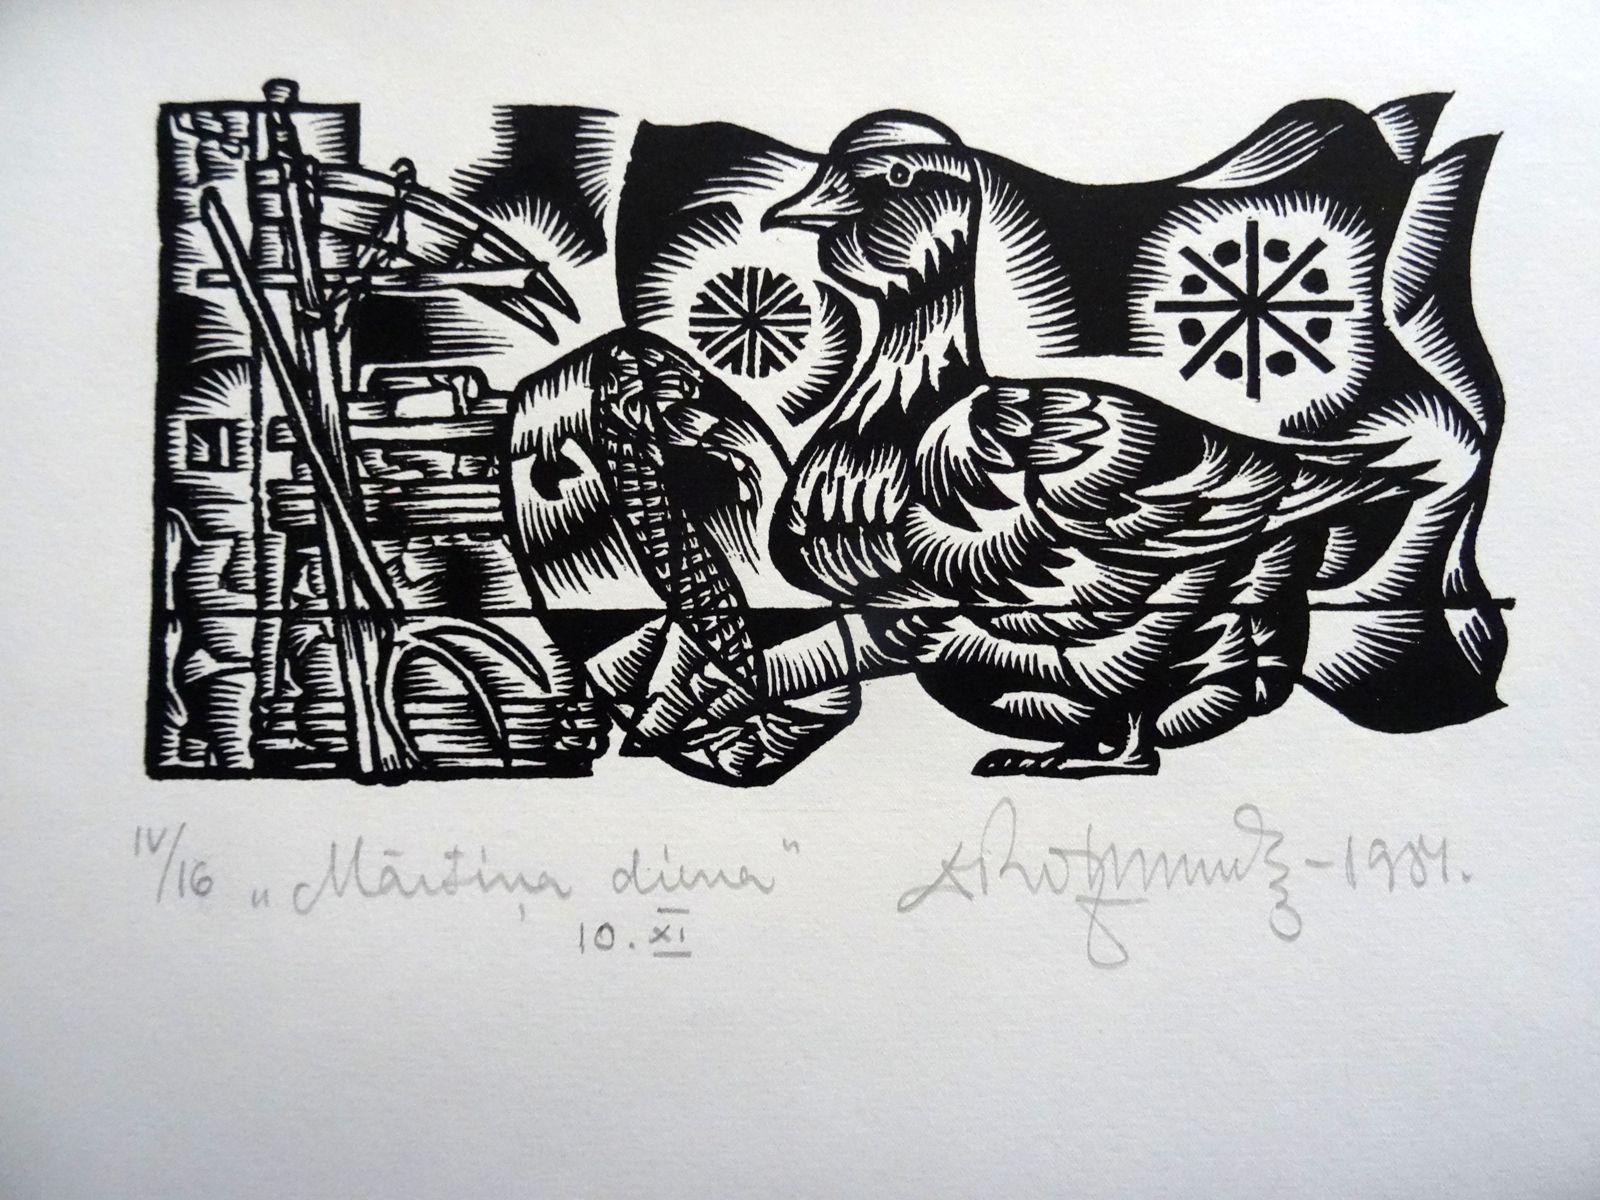 Le jour de Martins. 1984. Papier, linogravure, 25 x 34 cm